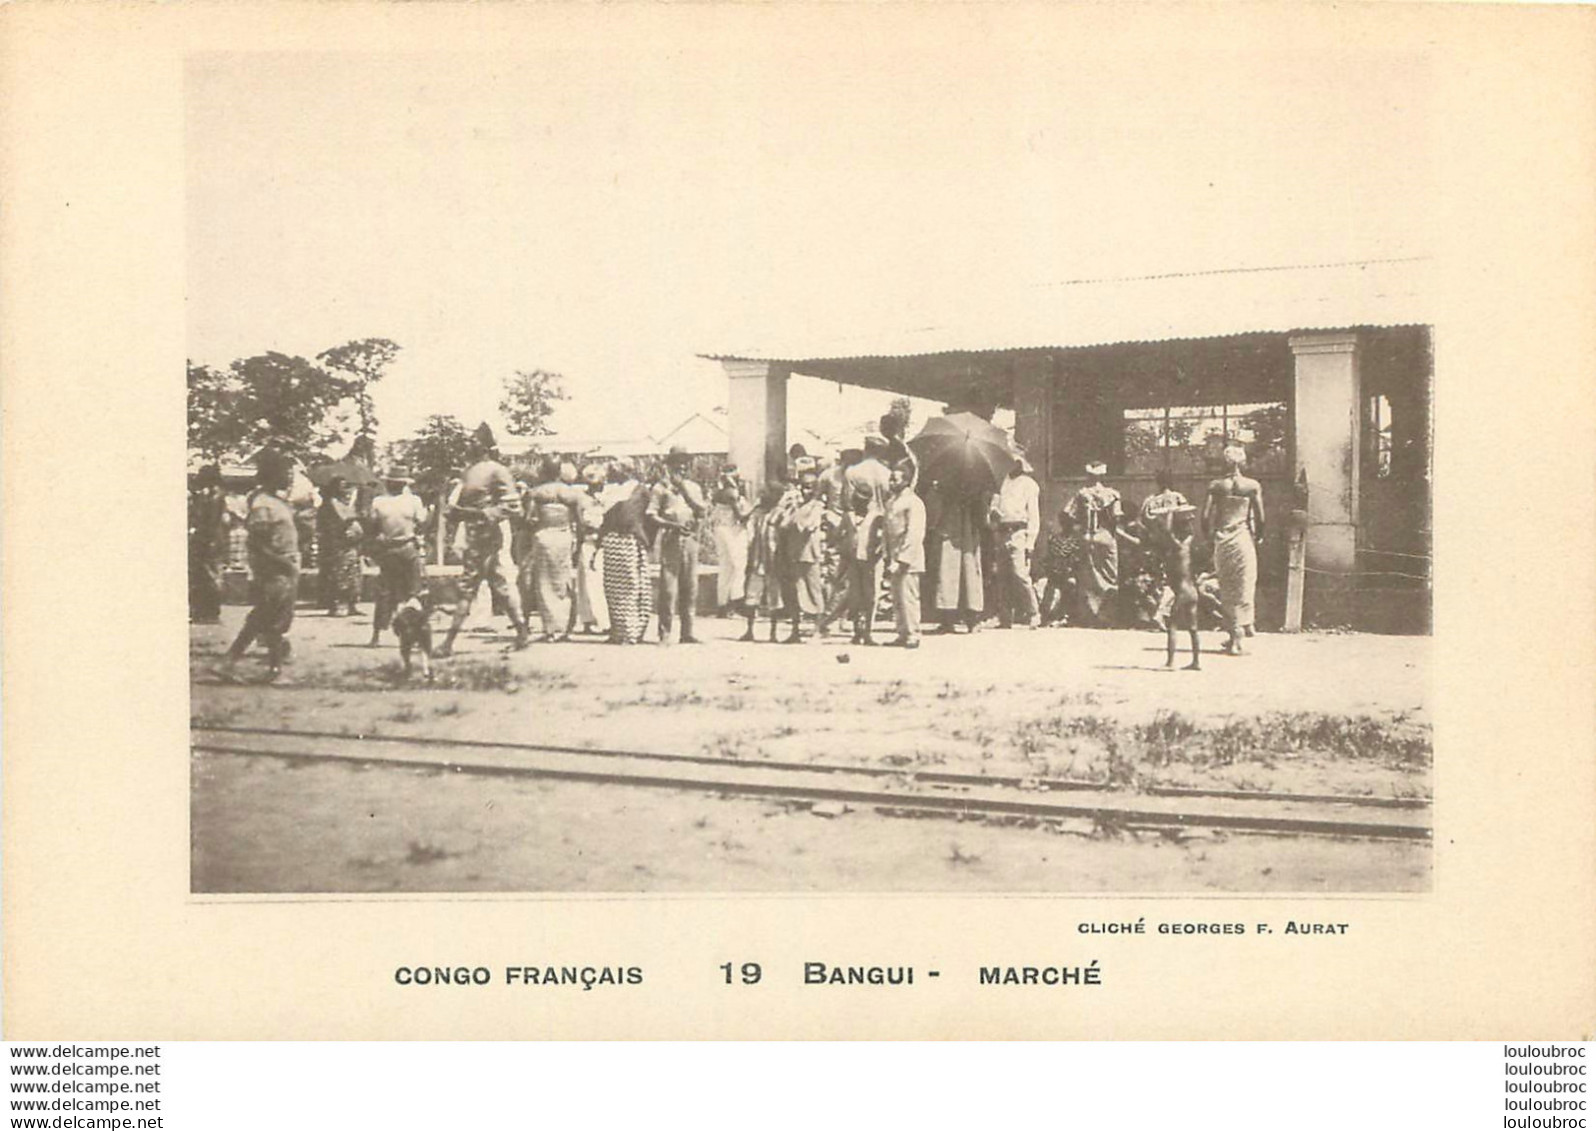 BANGUI MARCHE EDITION AURAT - Congo Français